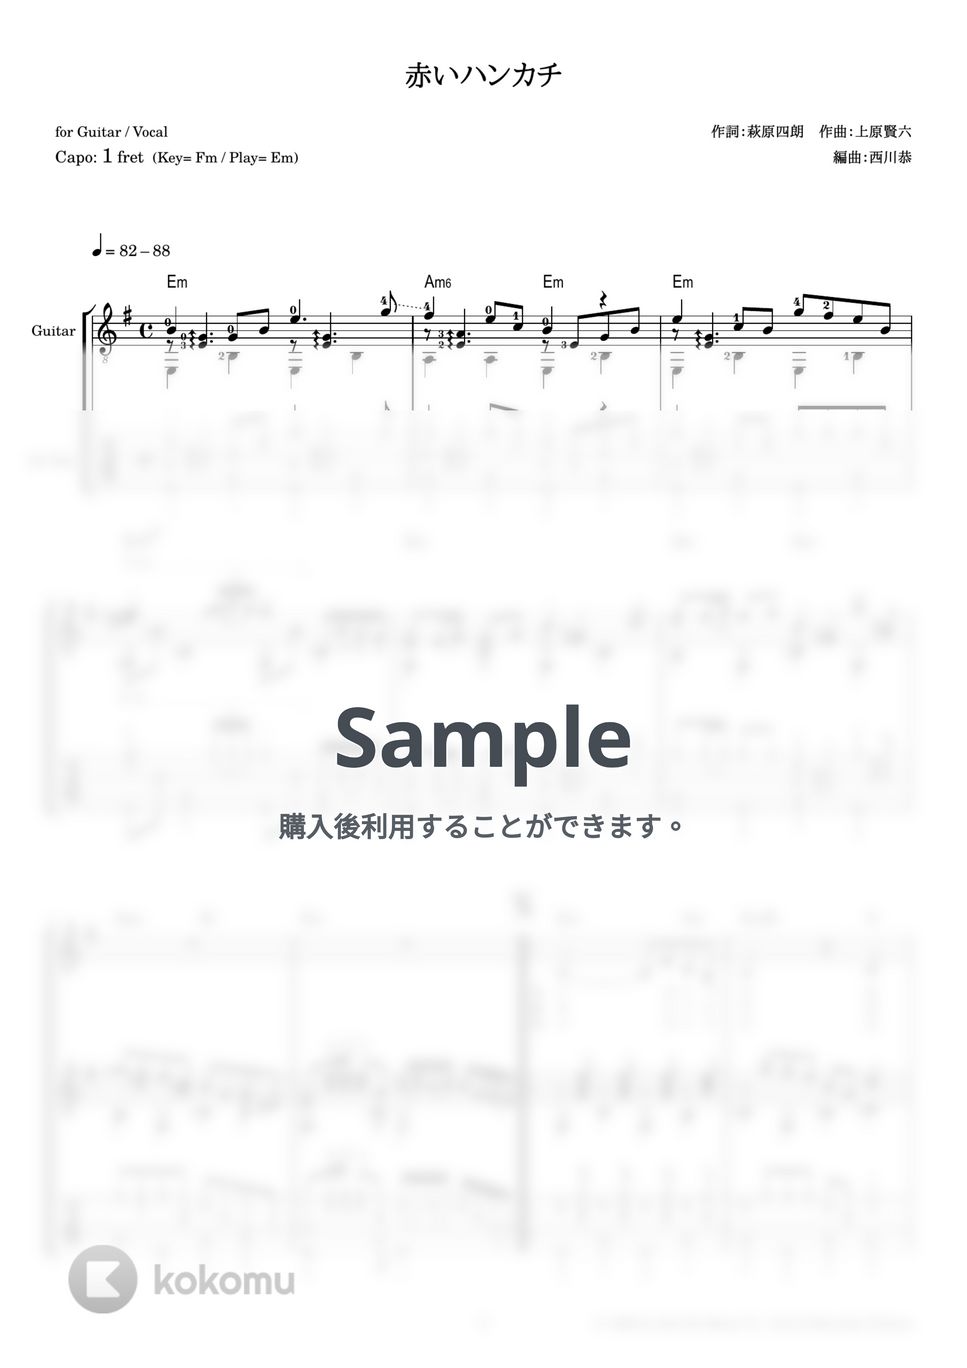 石原裕次郎 - 赤いハンカチ (ギター伴奏 / 弾き語り) by 西川恭